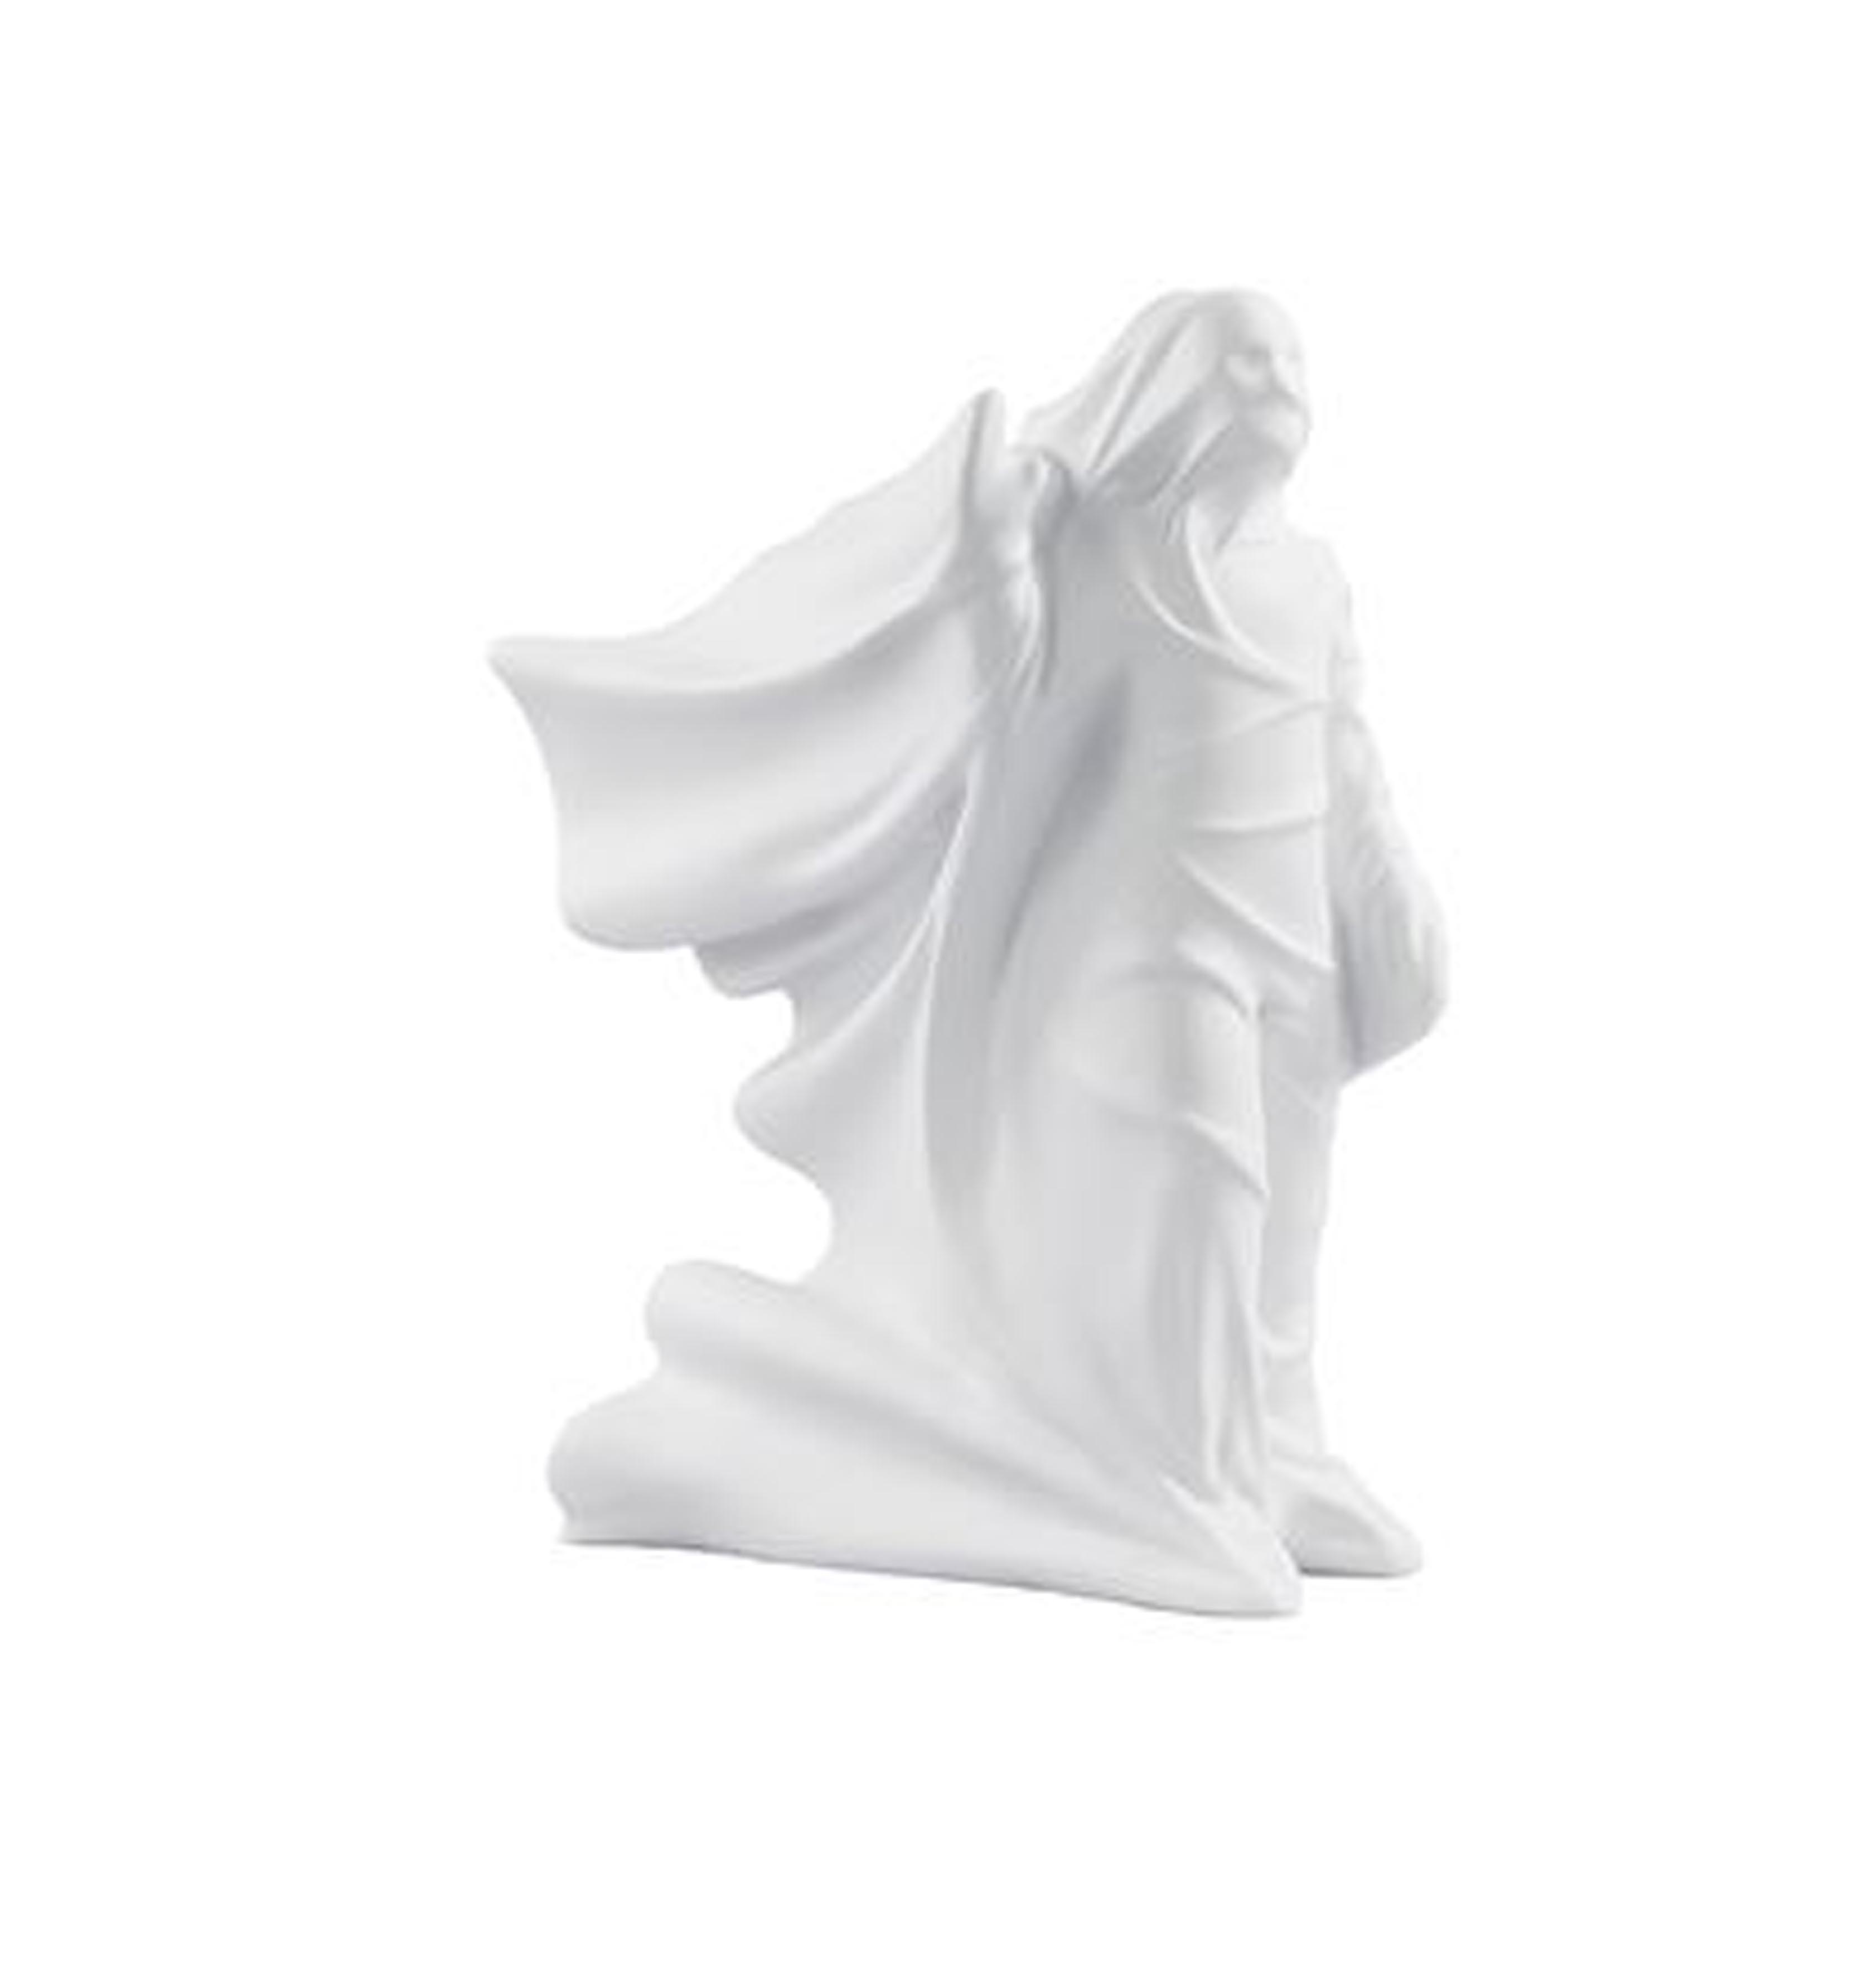 تمثال ديكور لإنسان يرفع يده باللون الأبيض HT-33256